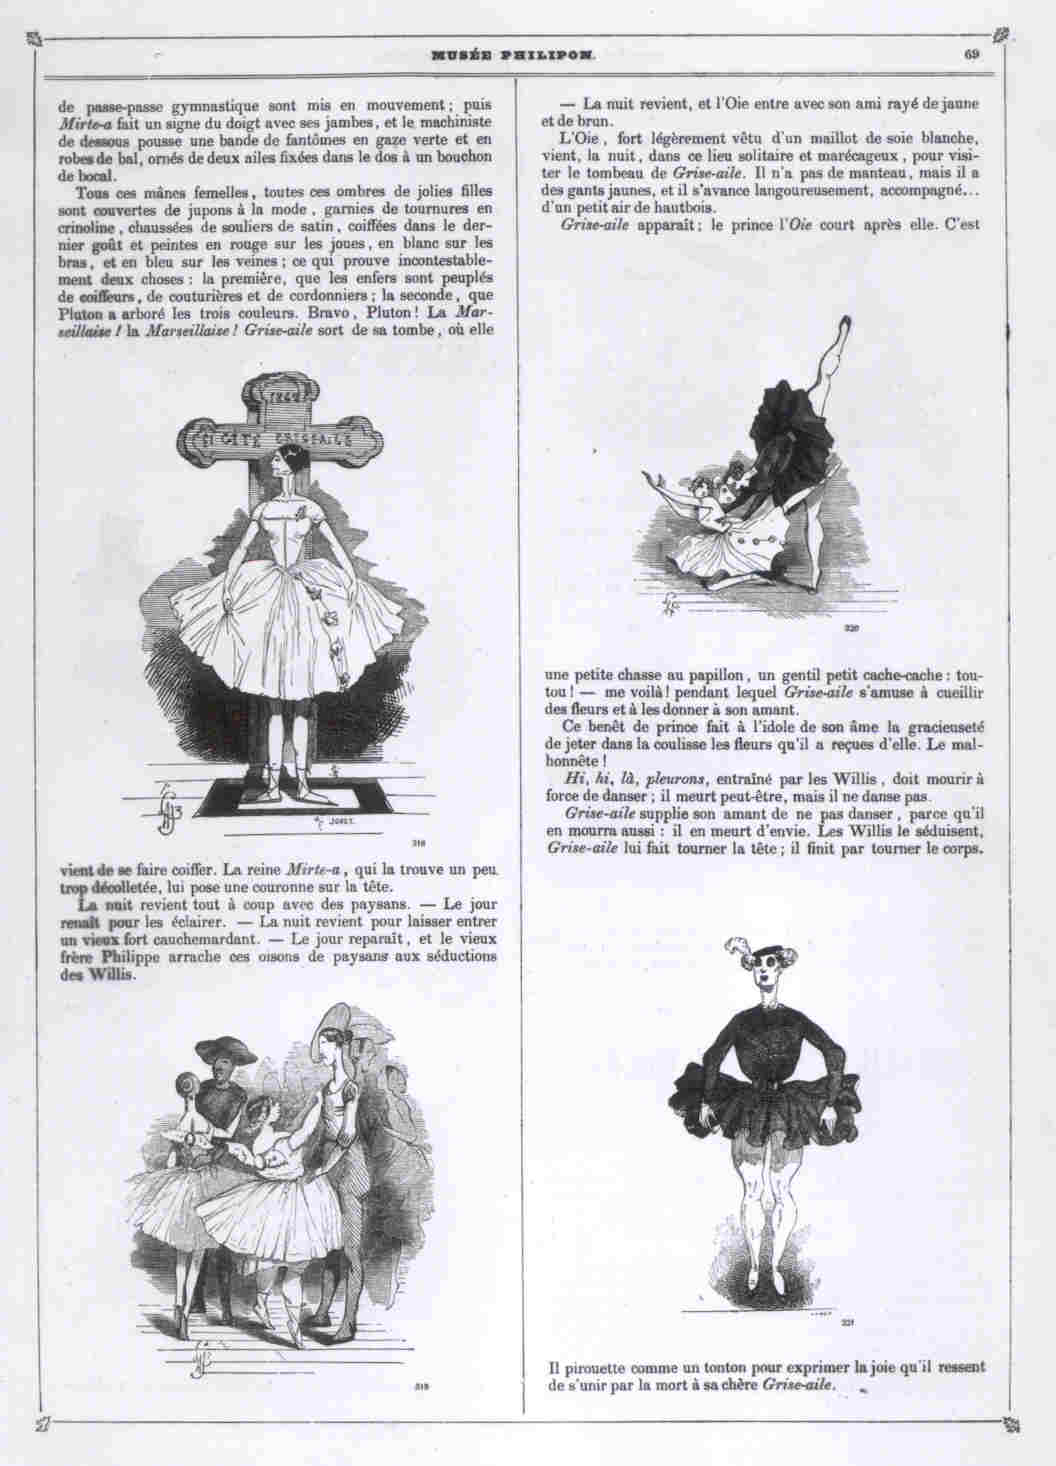 Grise-aile, parodie de Giselle ou les Wilis. Textes et dessins de Lorentz, Musée Philipon, 1842-1843. Bibliothèque-musée de l'Opéra-BnF